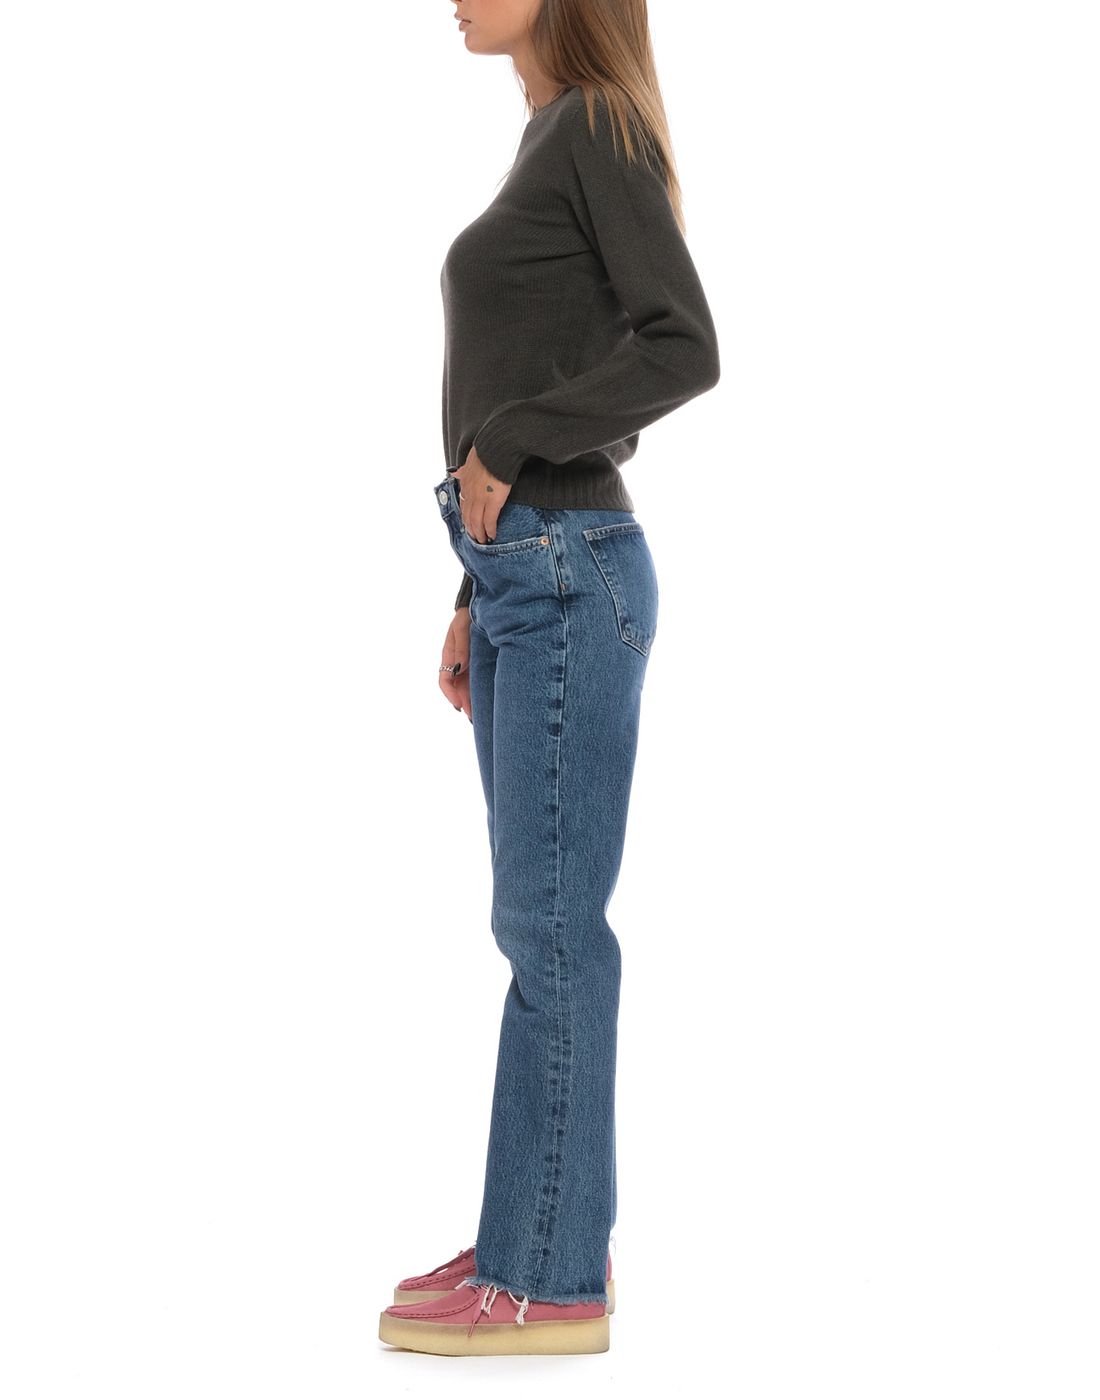 Jeans Woman A180 1371 Esfera Agolde